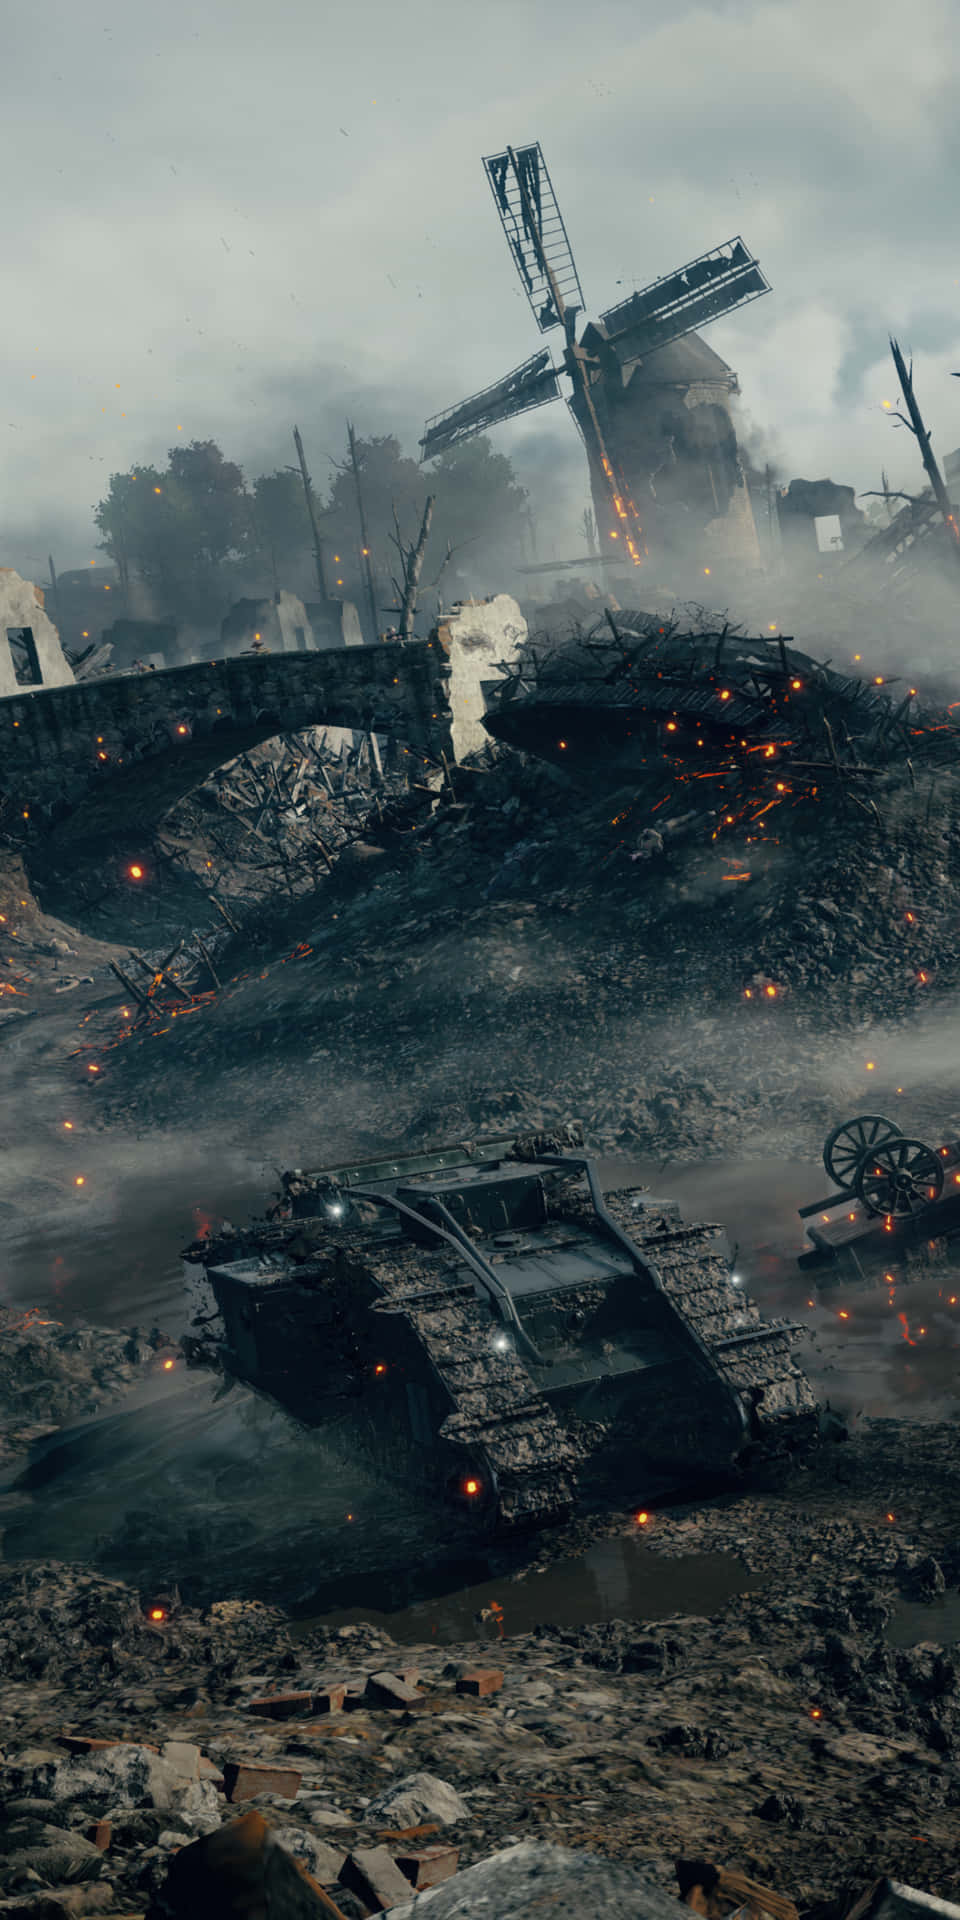 Upplevden Episka Actionäventyret Från Battlefield 1 Med Pixel 3:s Bakgrundsbild.